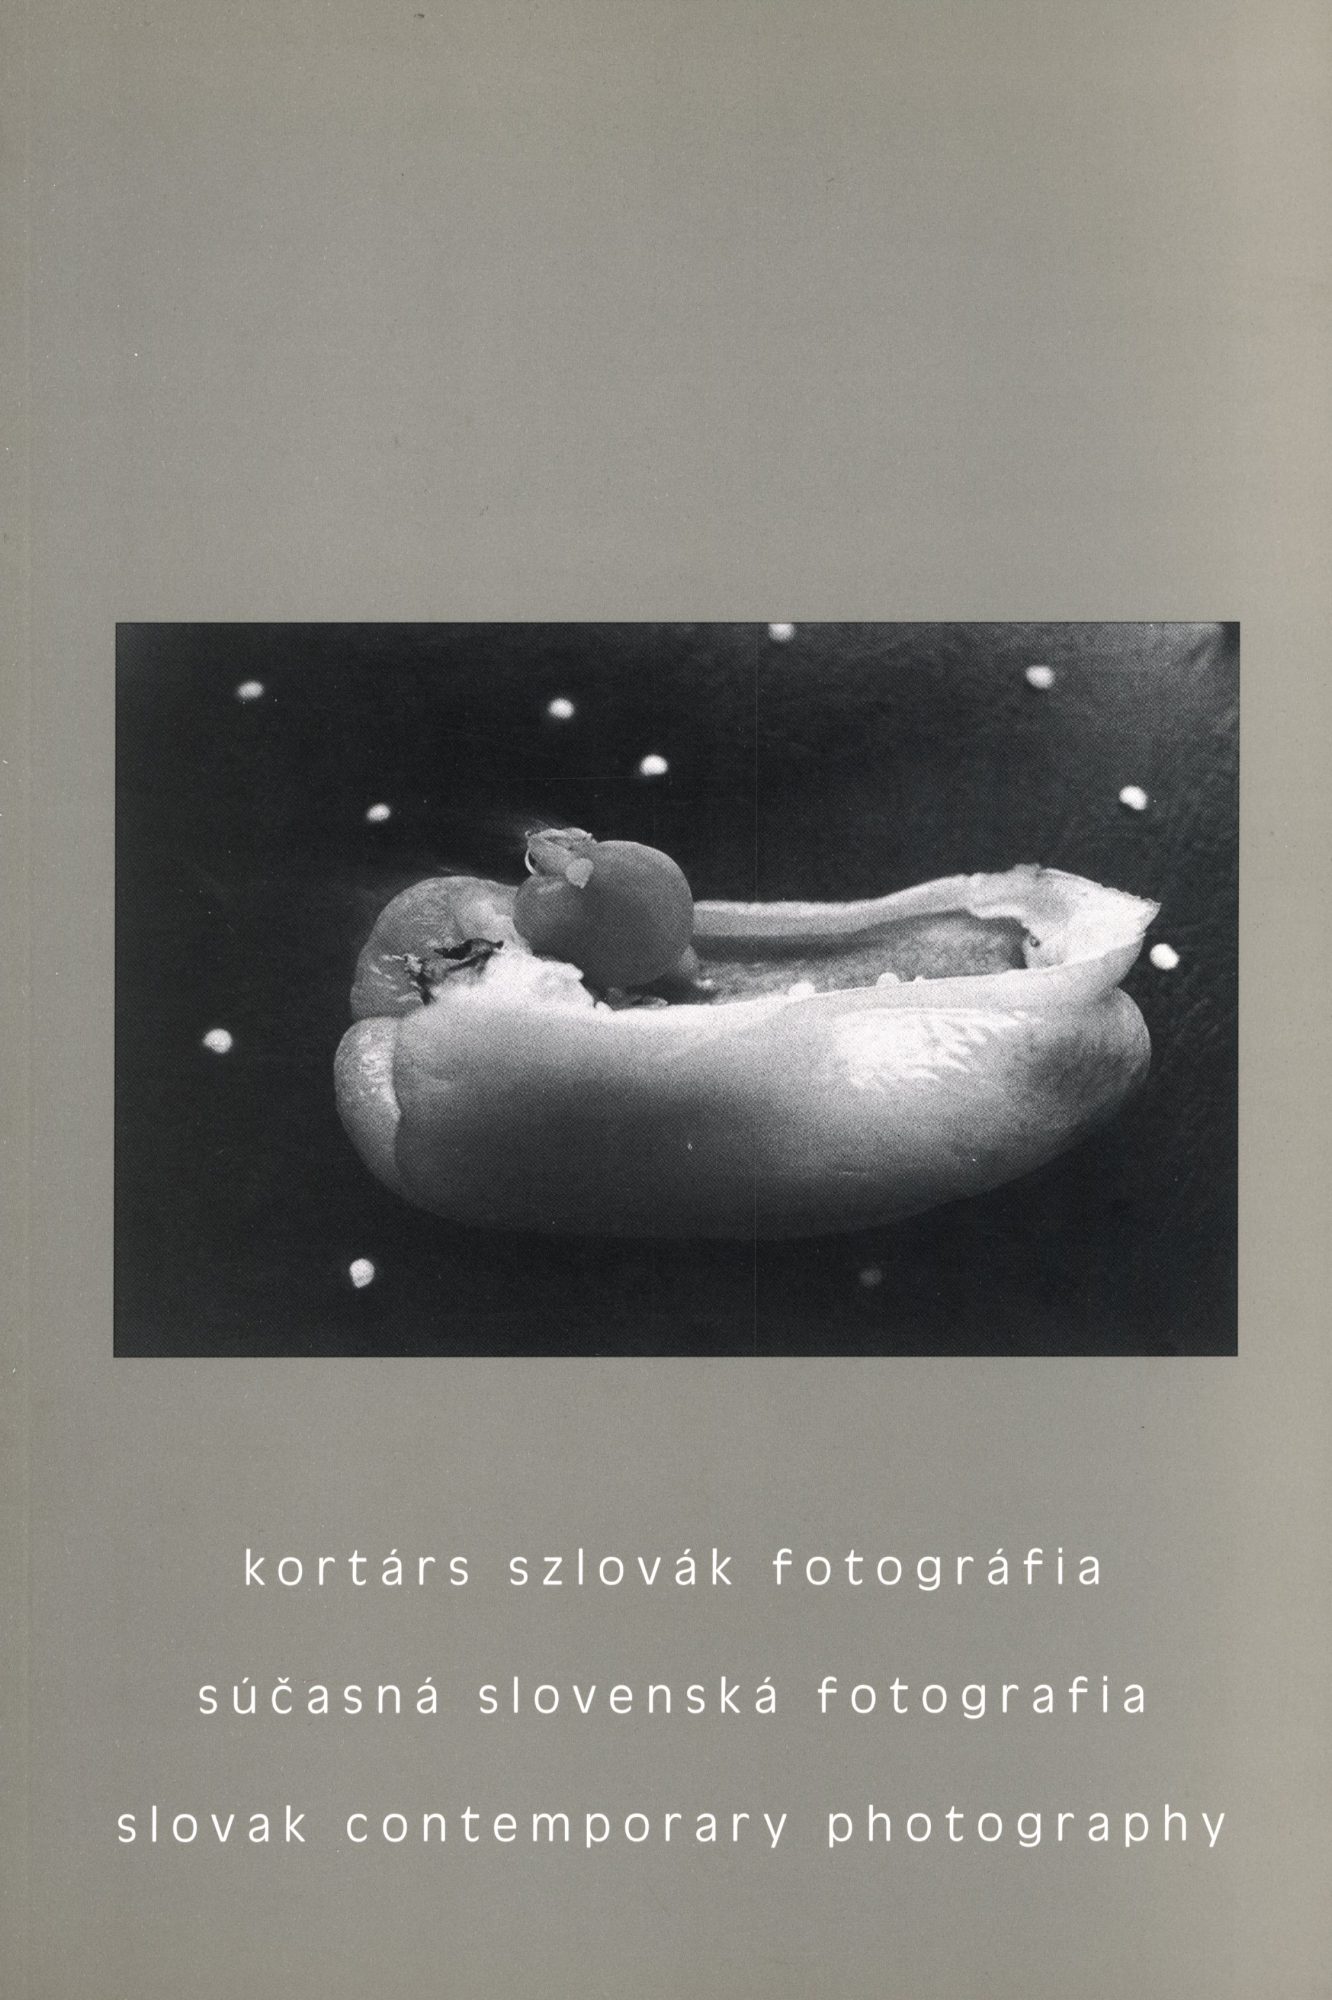 Kortárs Szlovák Fotográfia (Slovak Contemporary Photography) Various Artists